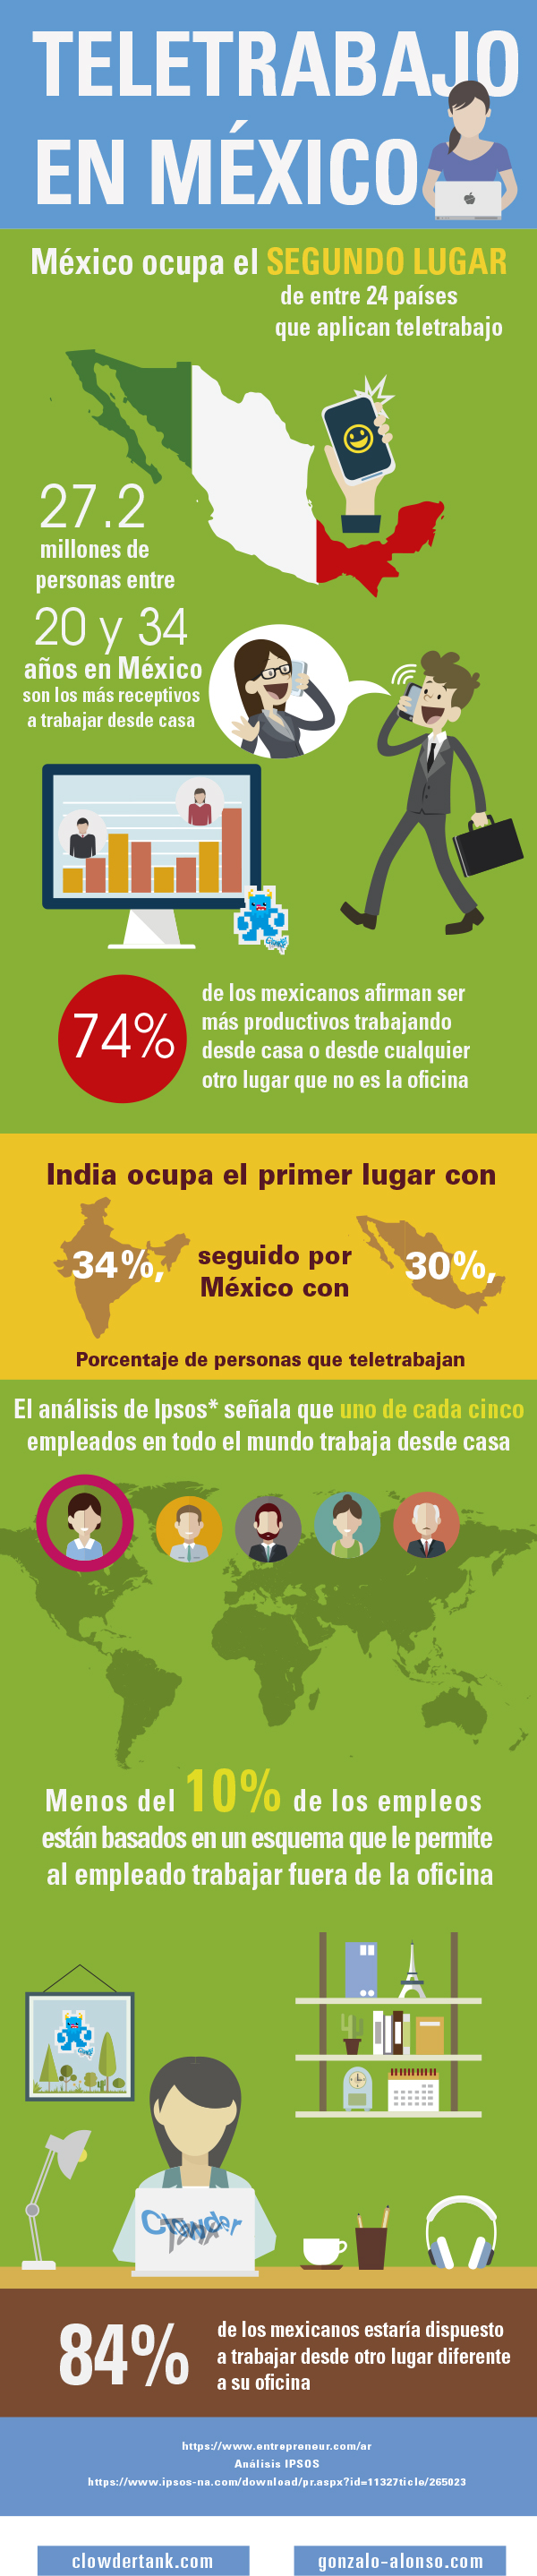 teletrabajo o teleccomuting en México